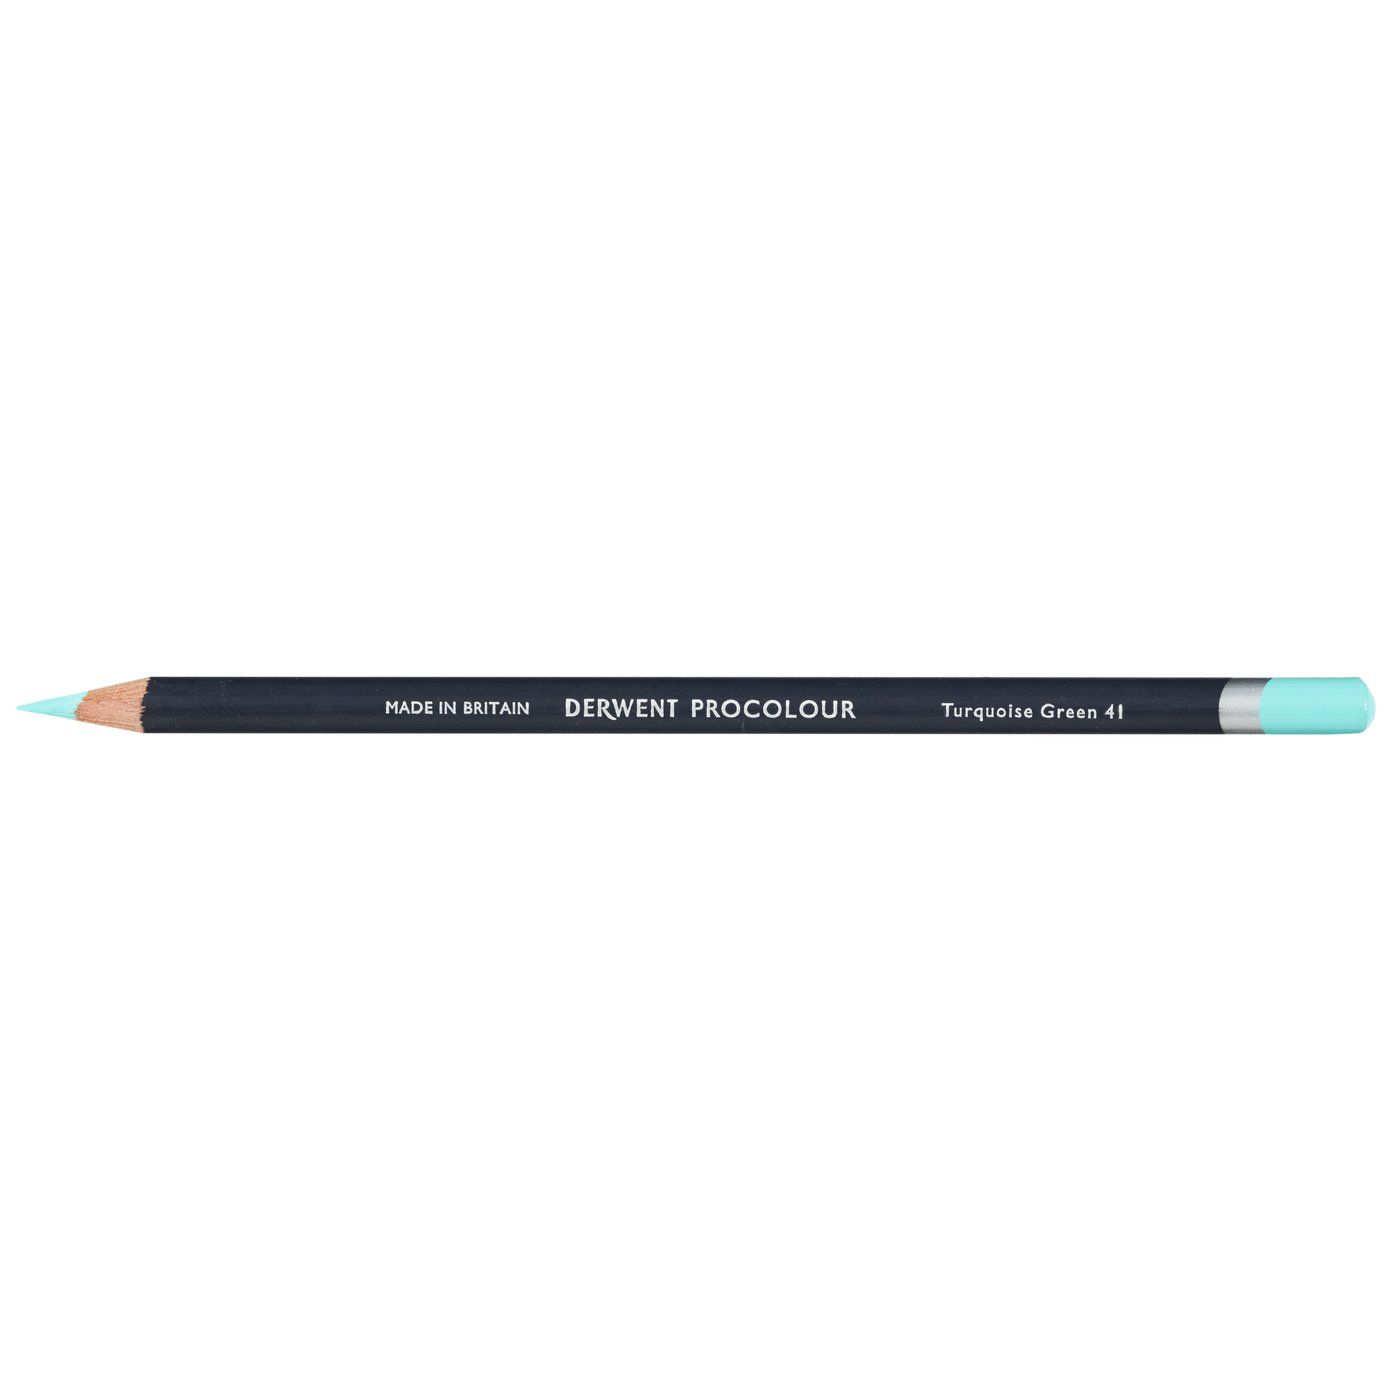 Derwent Procolour Pencil - 41 Turquoise Green